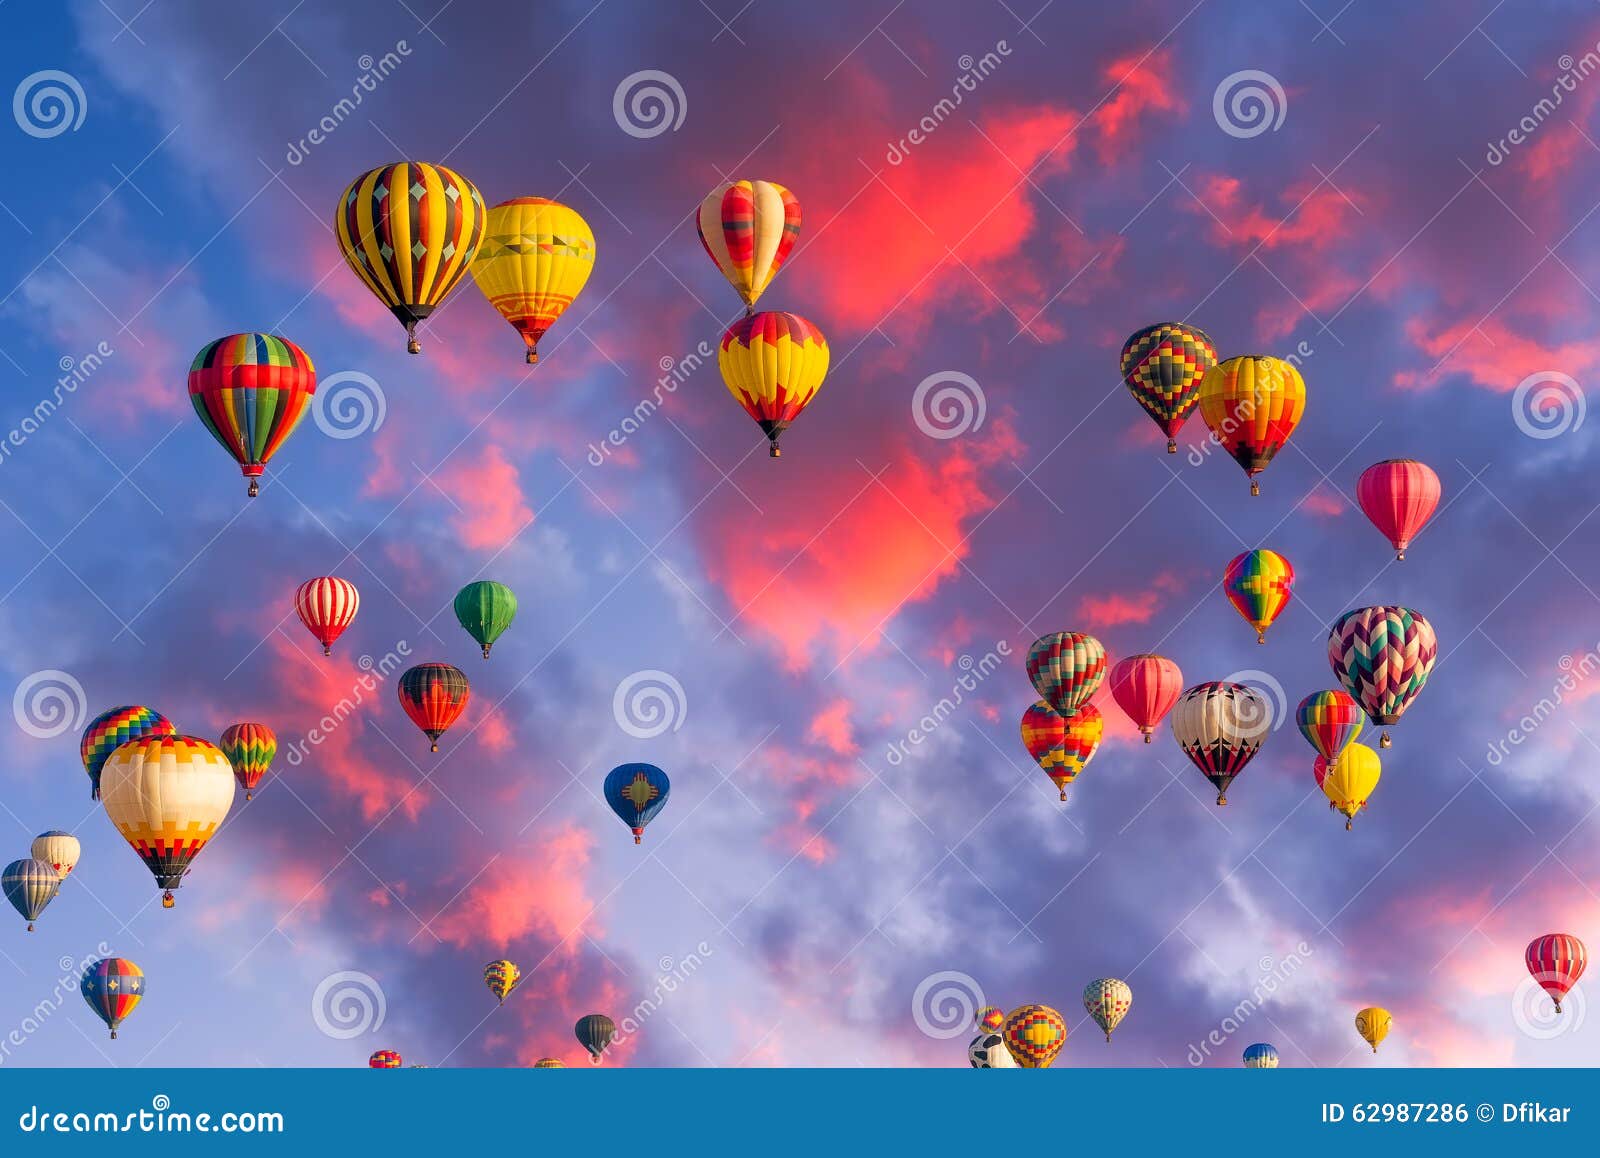 balloons over albuquerque